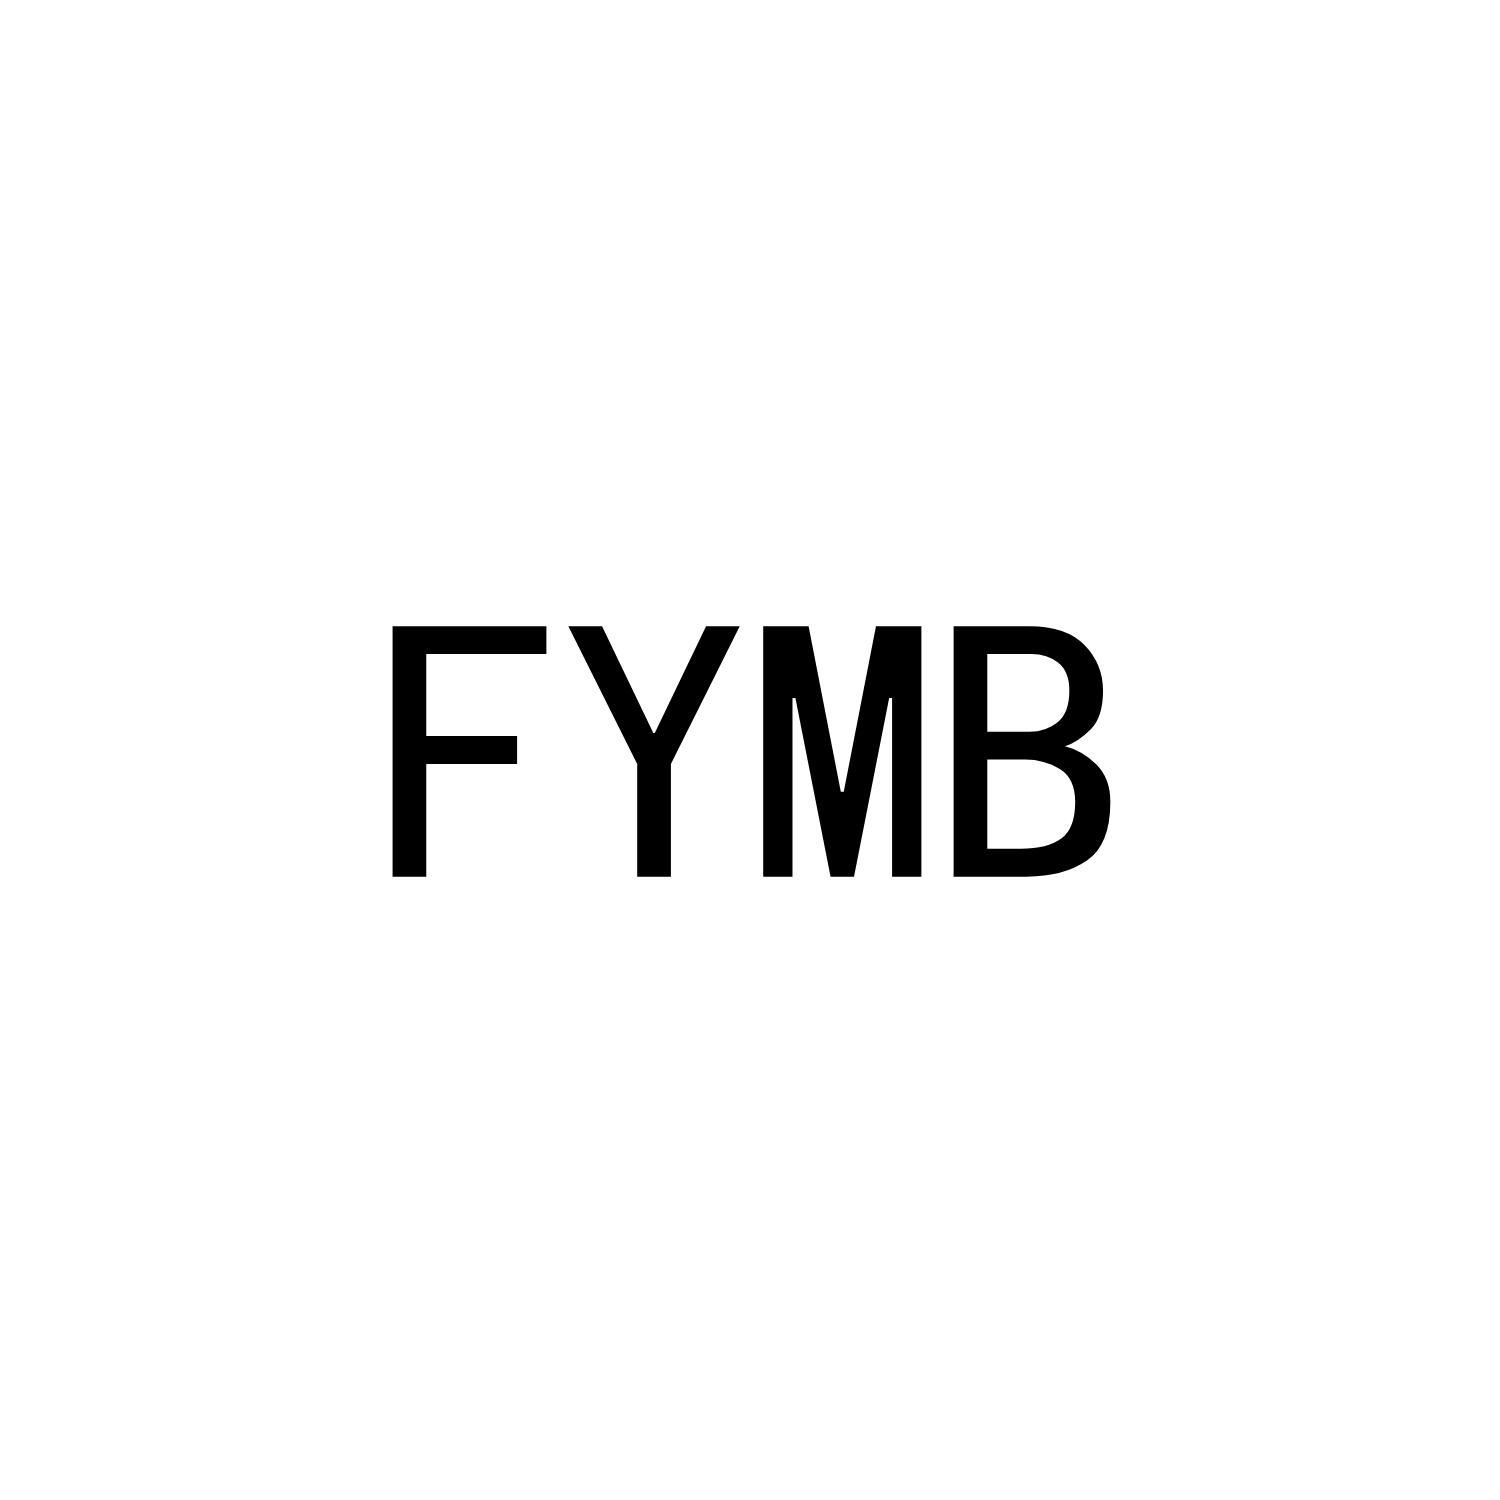 FYMB